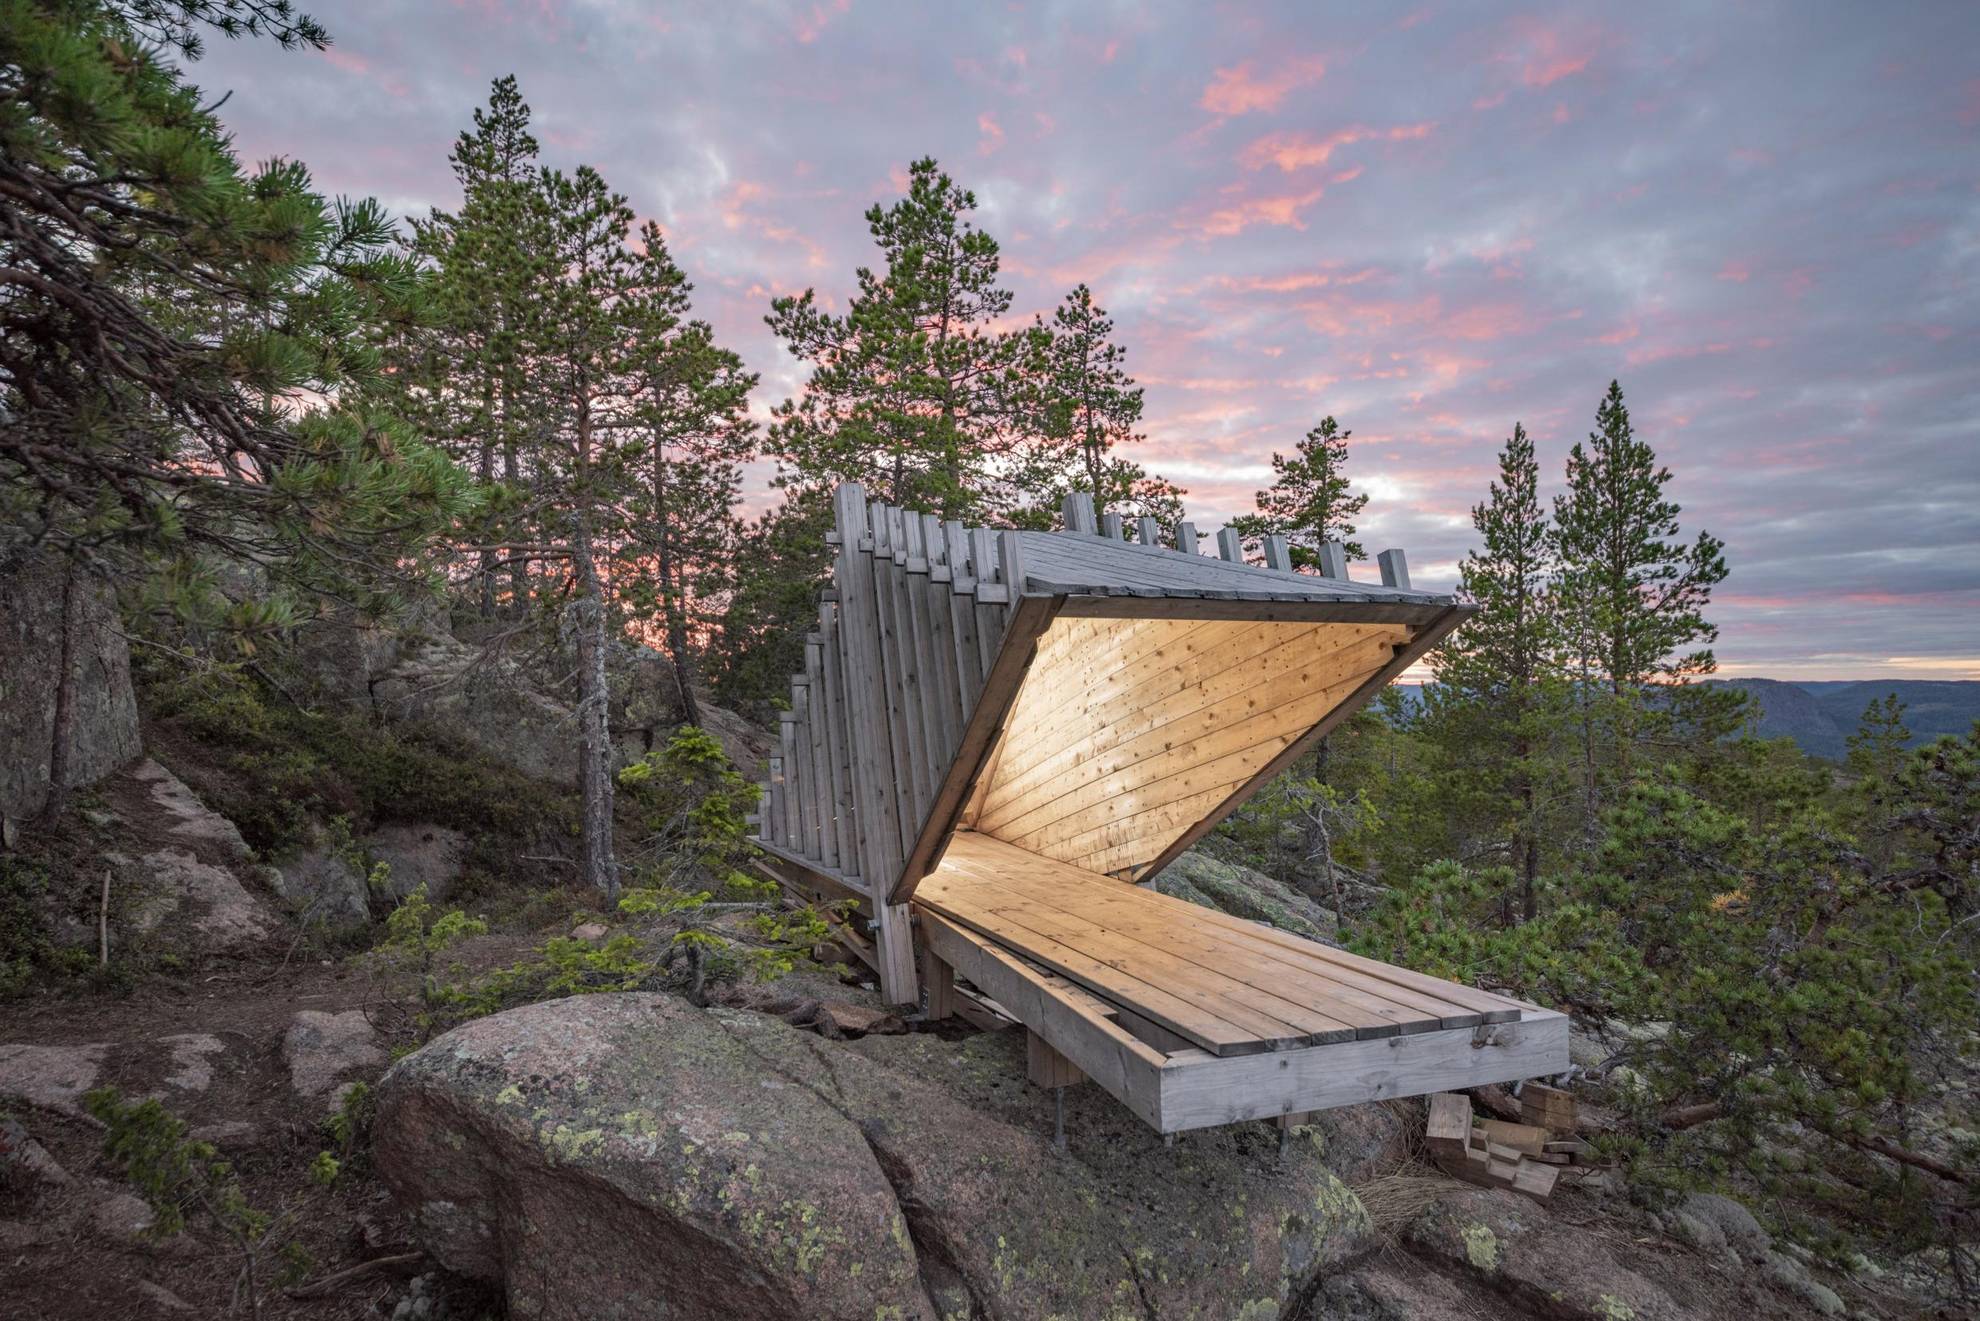 Une hutte ou une cabane construite avec une architecture minimaliste se dresse au sommet d'une colline boisée de la Haute Côte de Suède, avec le crépuscule derrière elle.